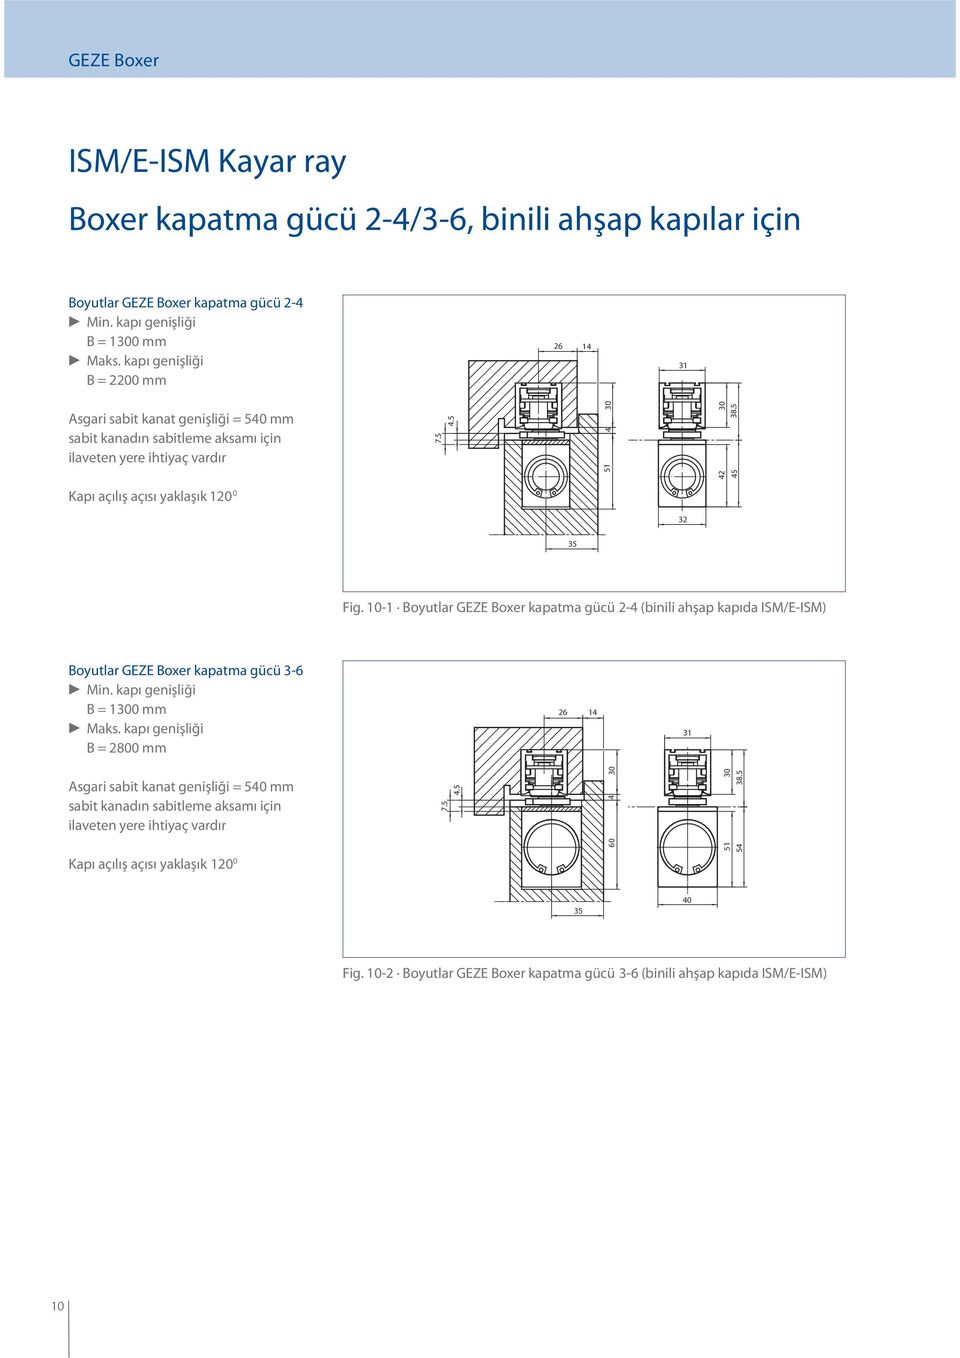 5 Kapı açılış açısı yaklaşık 1 0 32 35 Fig. 10-1 Boyutlar GEZE Boxer kapatma gücü 2-4 (binili ahşap kapıda ISM/E-ISM) Boyutlar GEZE Boxer kapatma gücü 3-6 c Min. kapı genişliği B = 1300 mm c Maks.